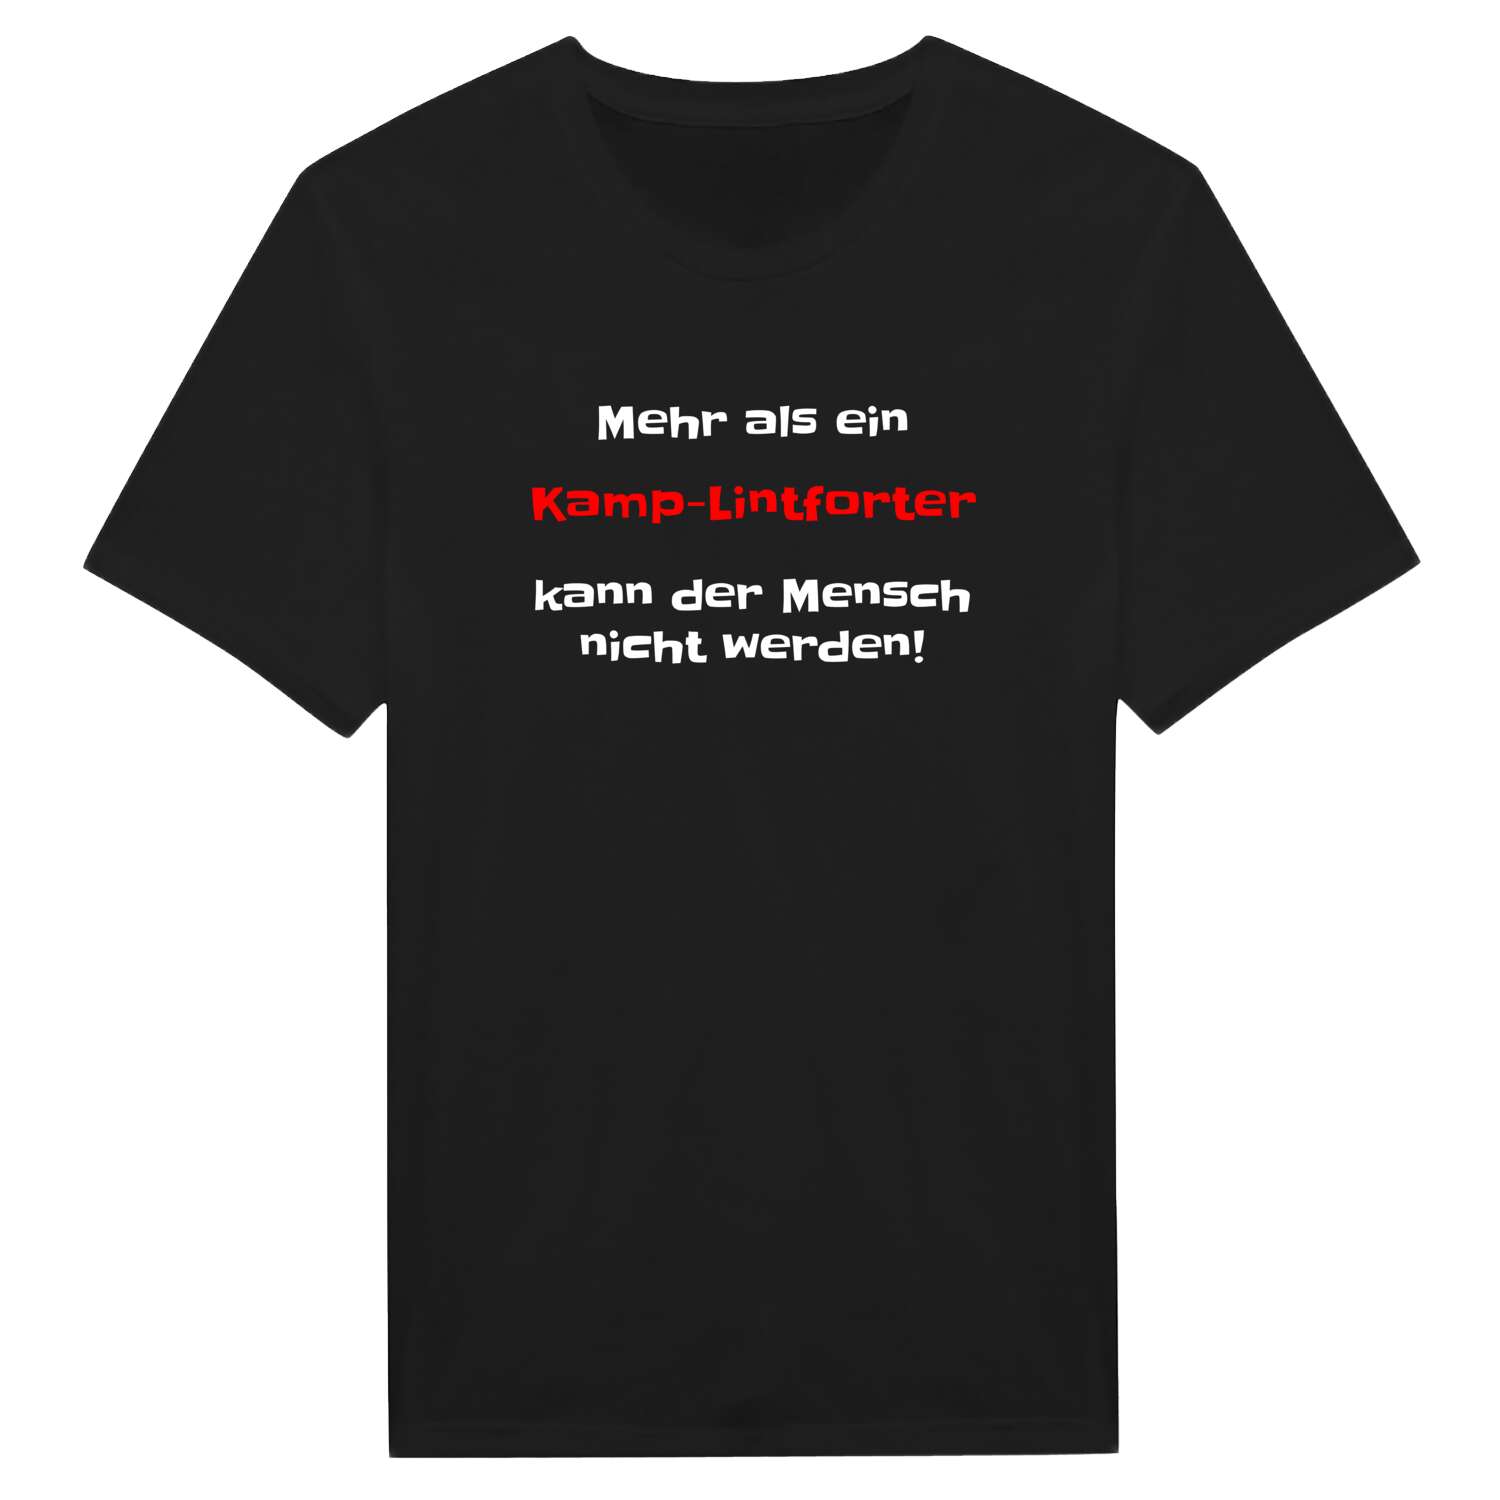 Kamp-Lintfort T-Shirt »Mehr als ein«